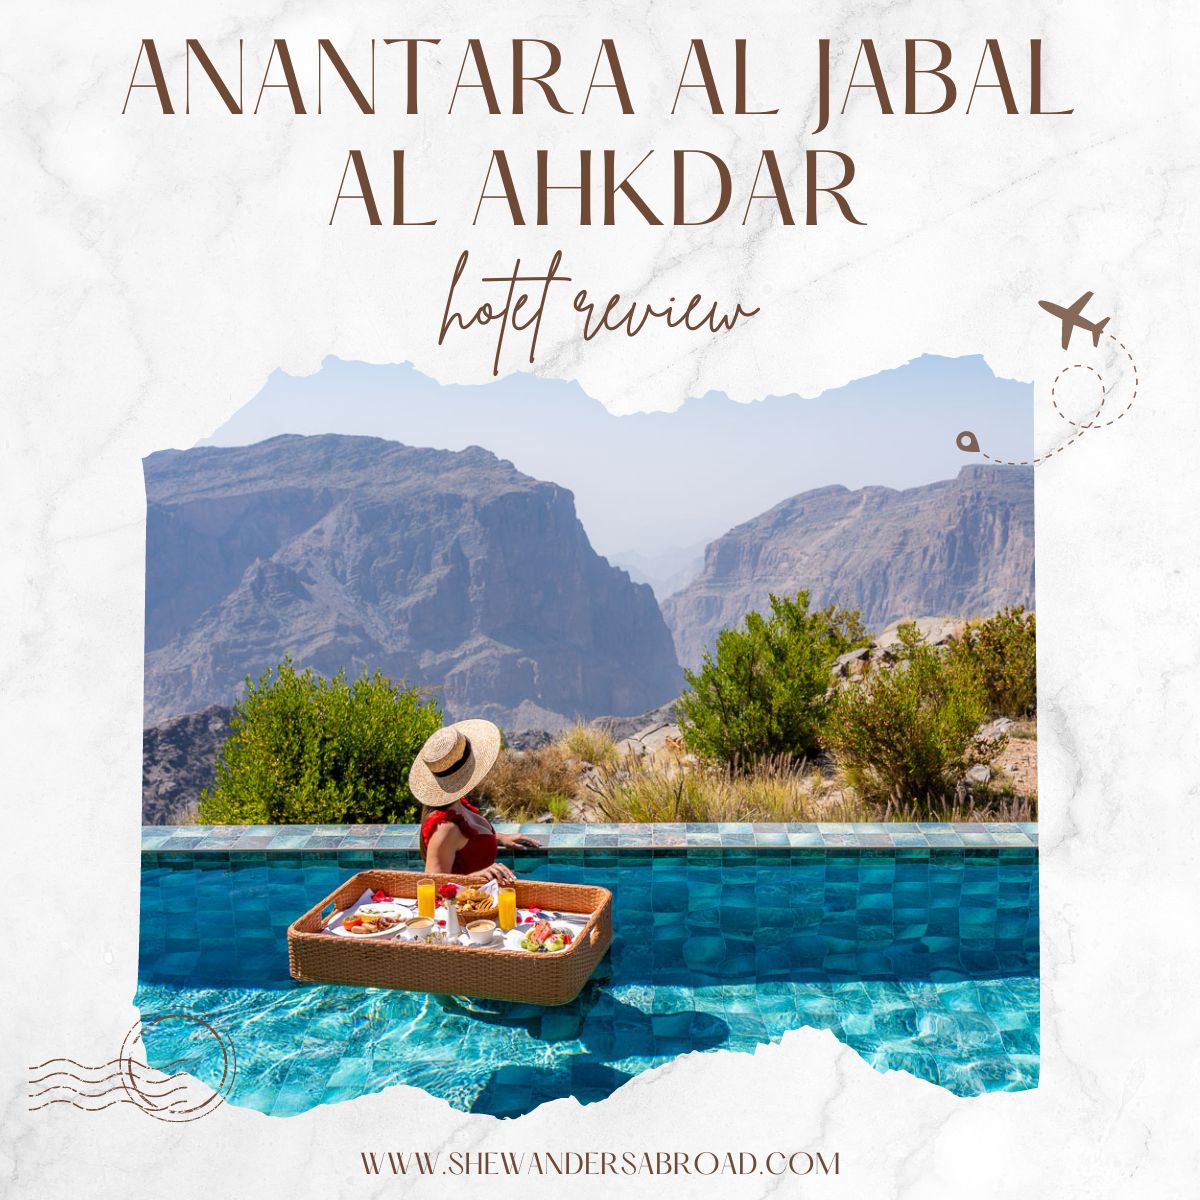 Anantara Al Jabal Al Akhdar Resort Review